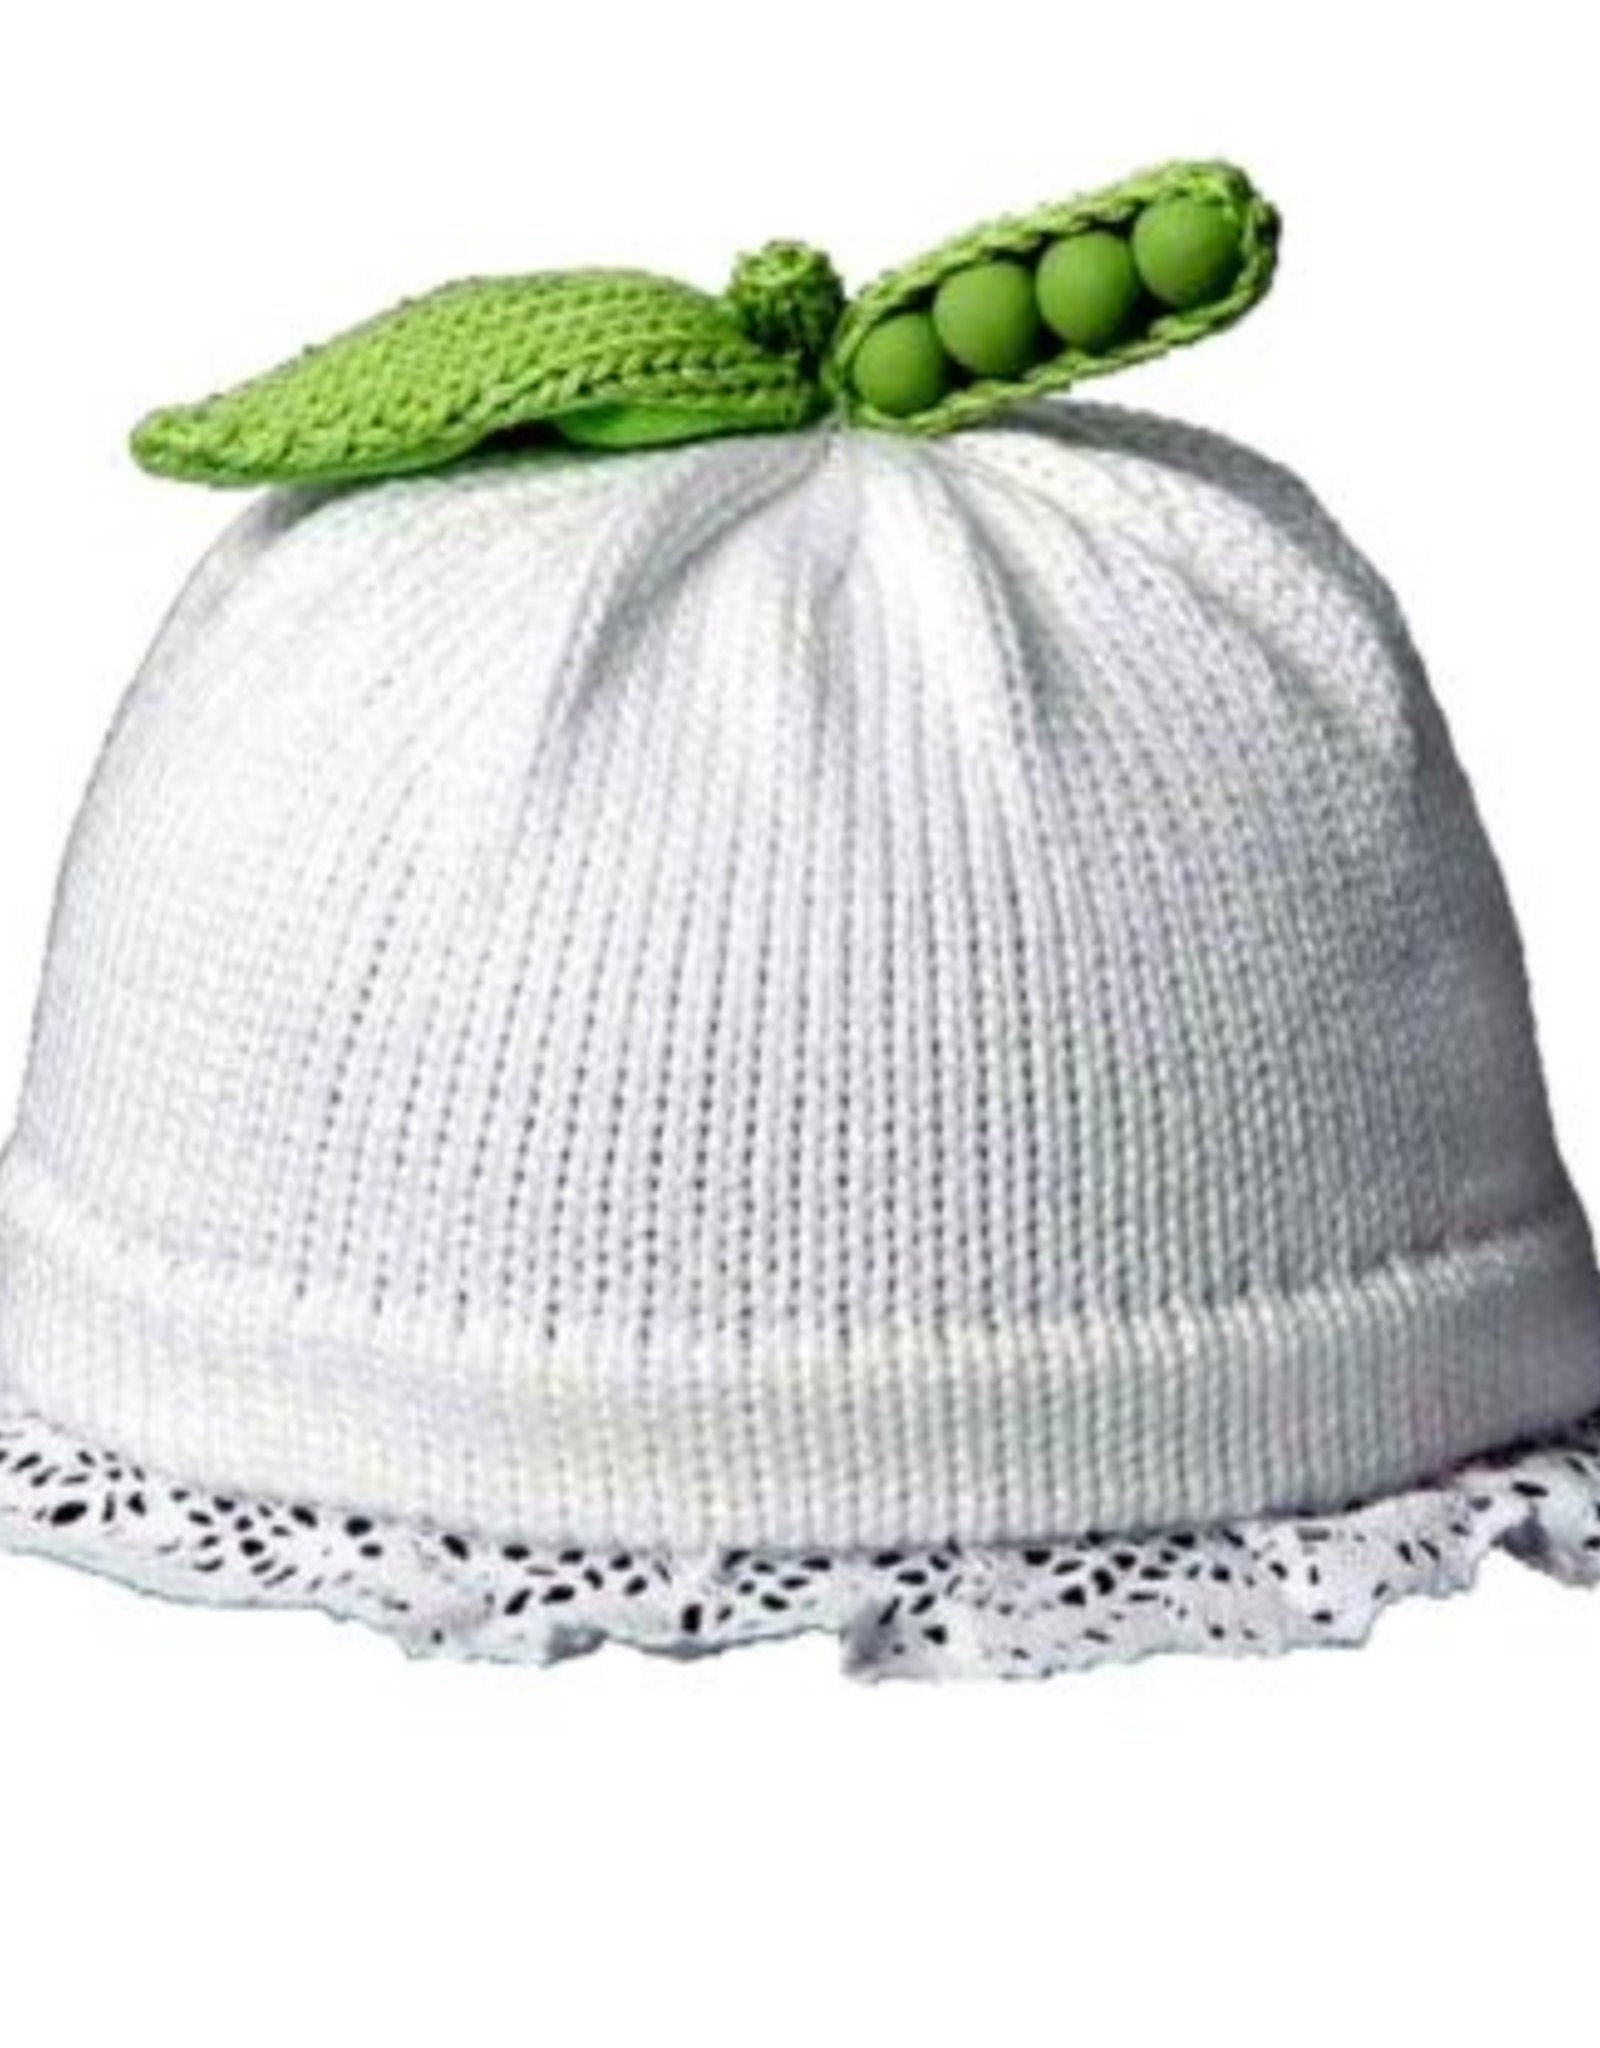 Margareta Horn Pea Hat white lace